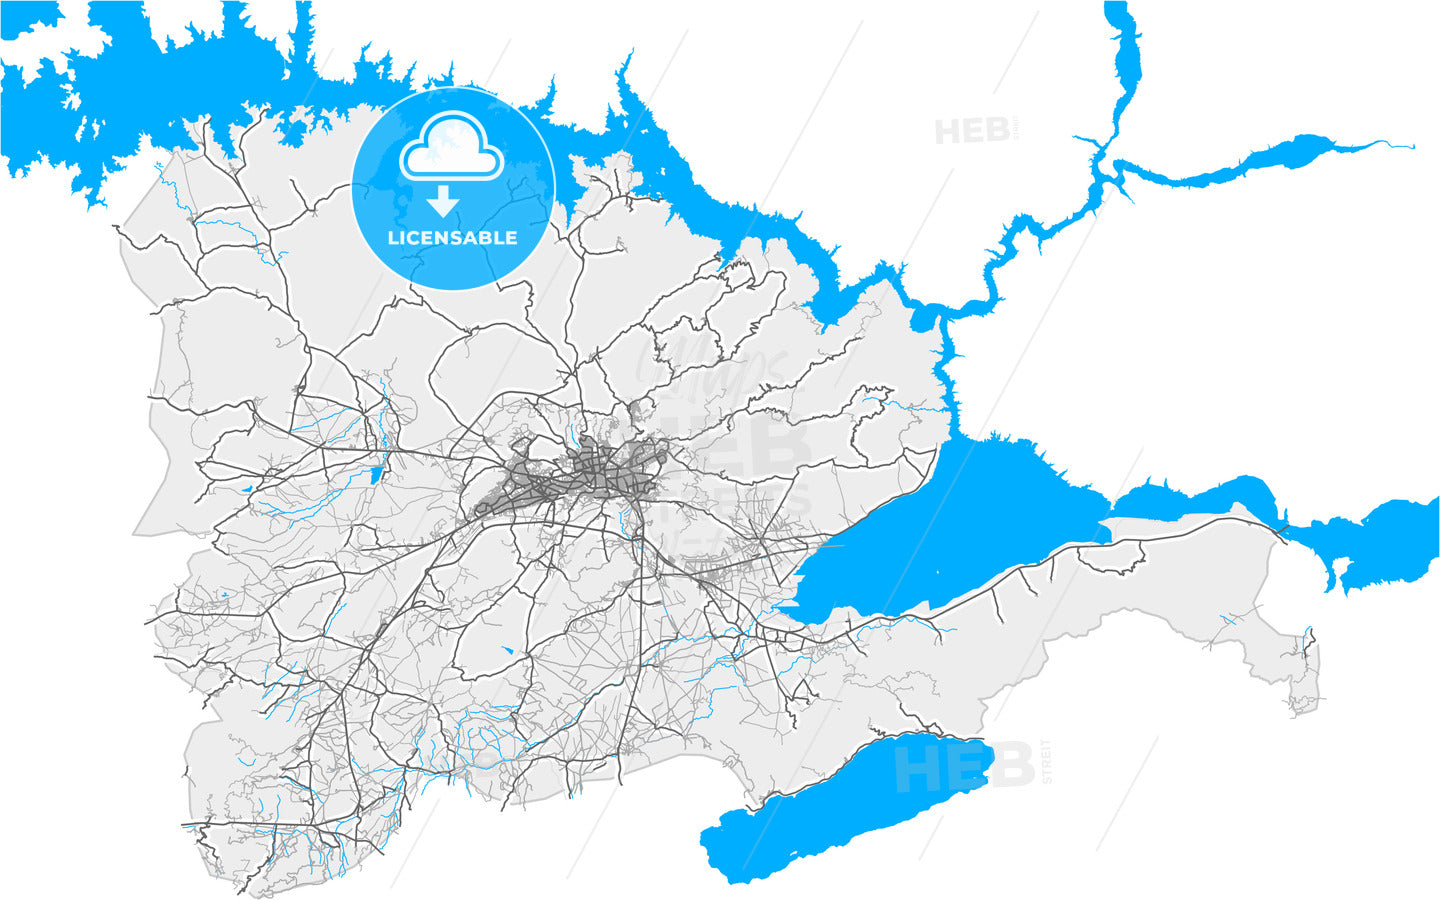 Elâzığ, Elâzığ, Turkey, high quality vector map